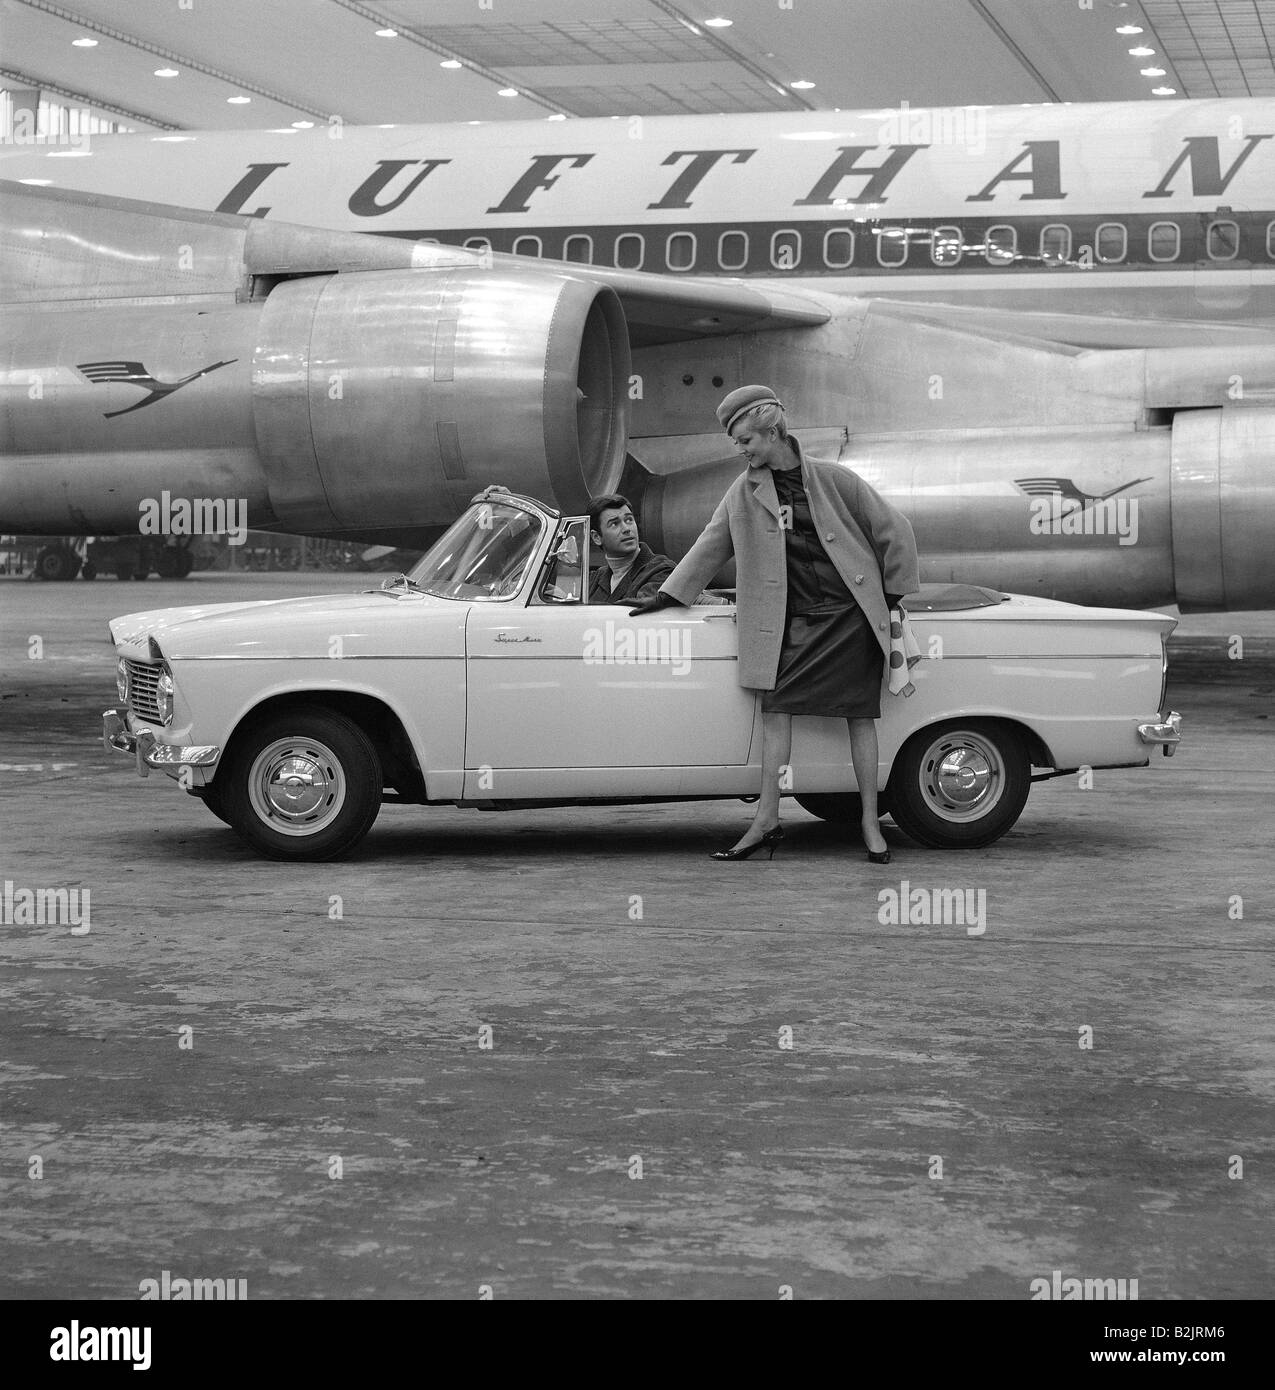 La mode, les années 60, le modèle de voiture, hangar Lufthansa, photographe : Rico Puhlmann, Additional-Rights Clearance-Info-Not-Available- Banque D'Images